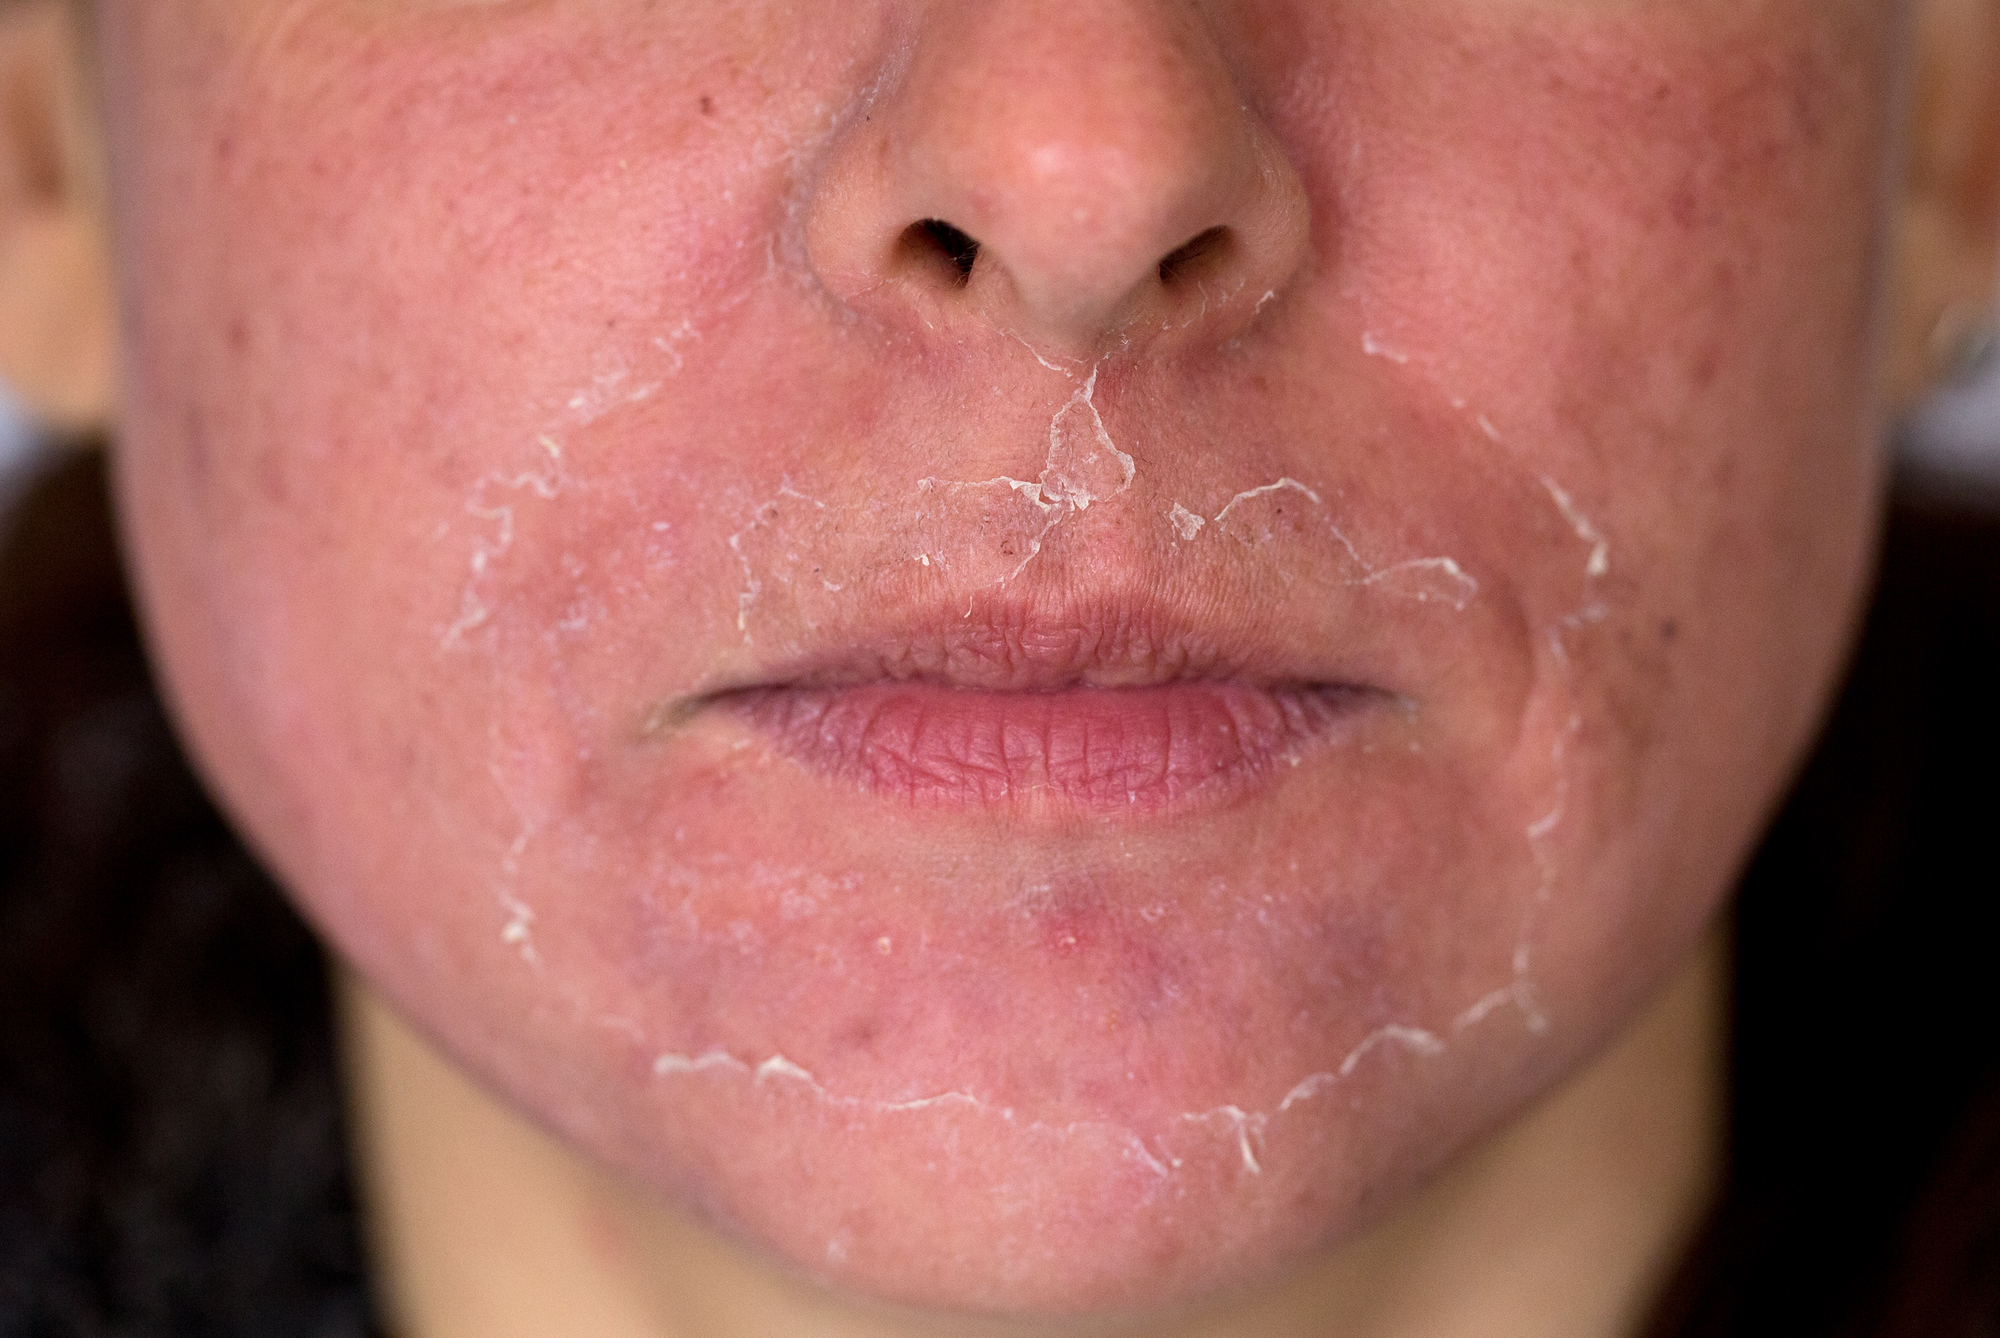 Post-chemical peel facial peeling